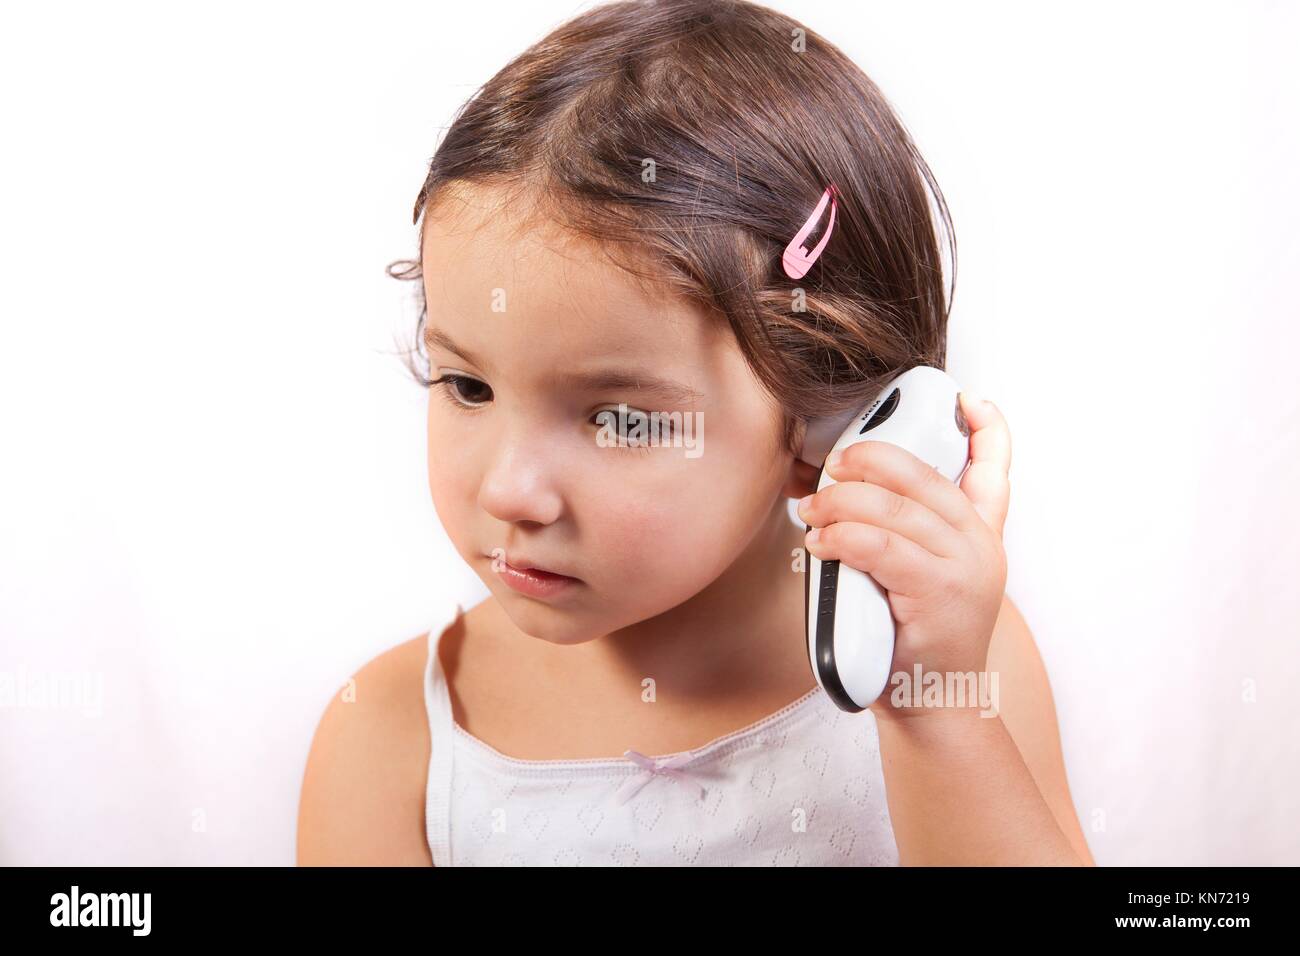 Kleines Mädchen mit Ohr elektronisches Thermometer, wobei sich die Temperatur im Gespräch. Isoliert auf weißem Hintergrund. Stockfoto